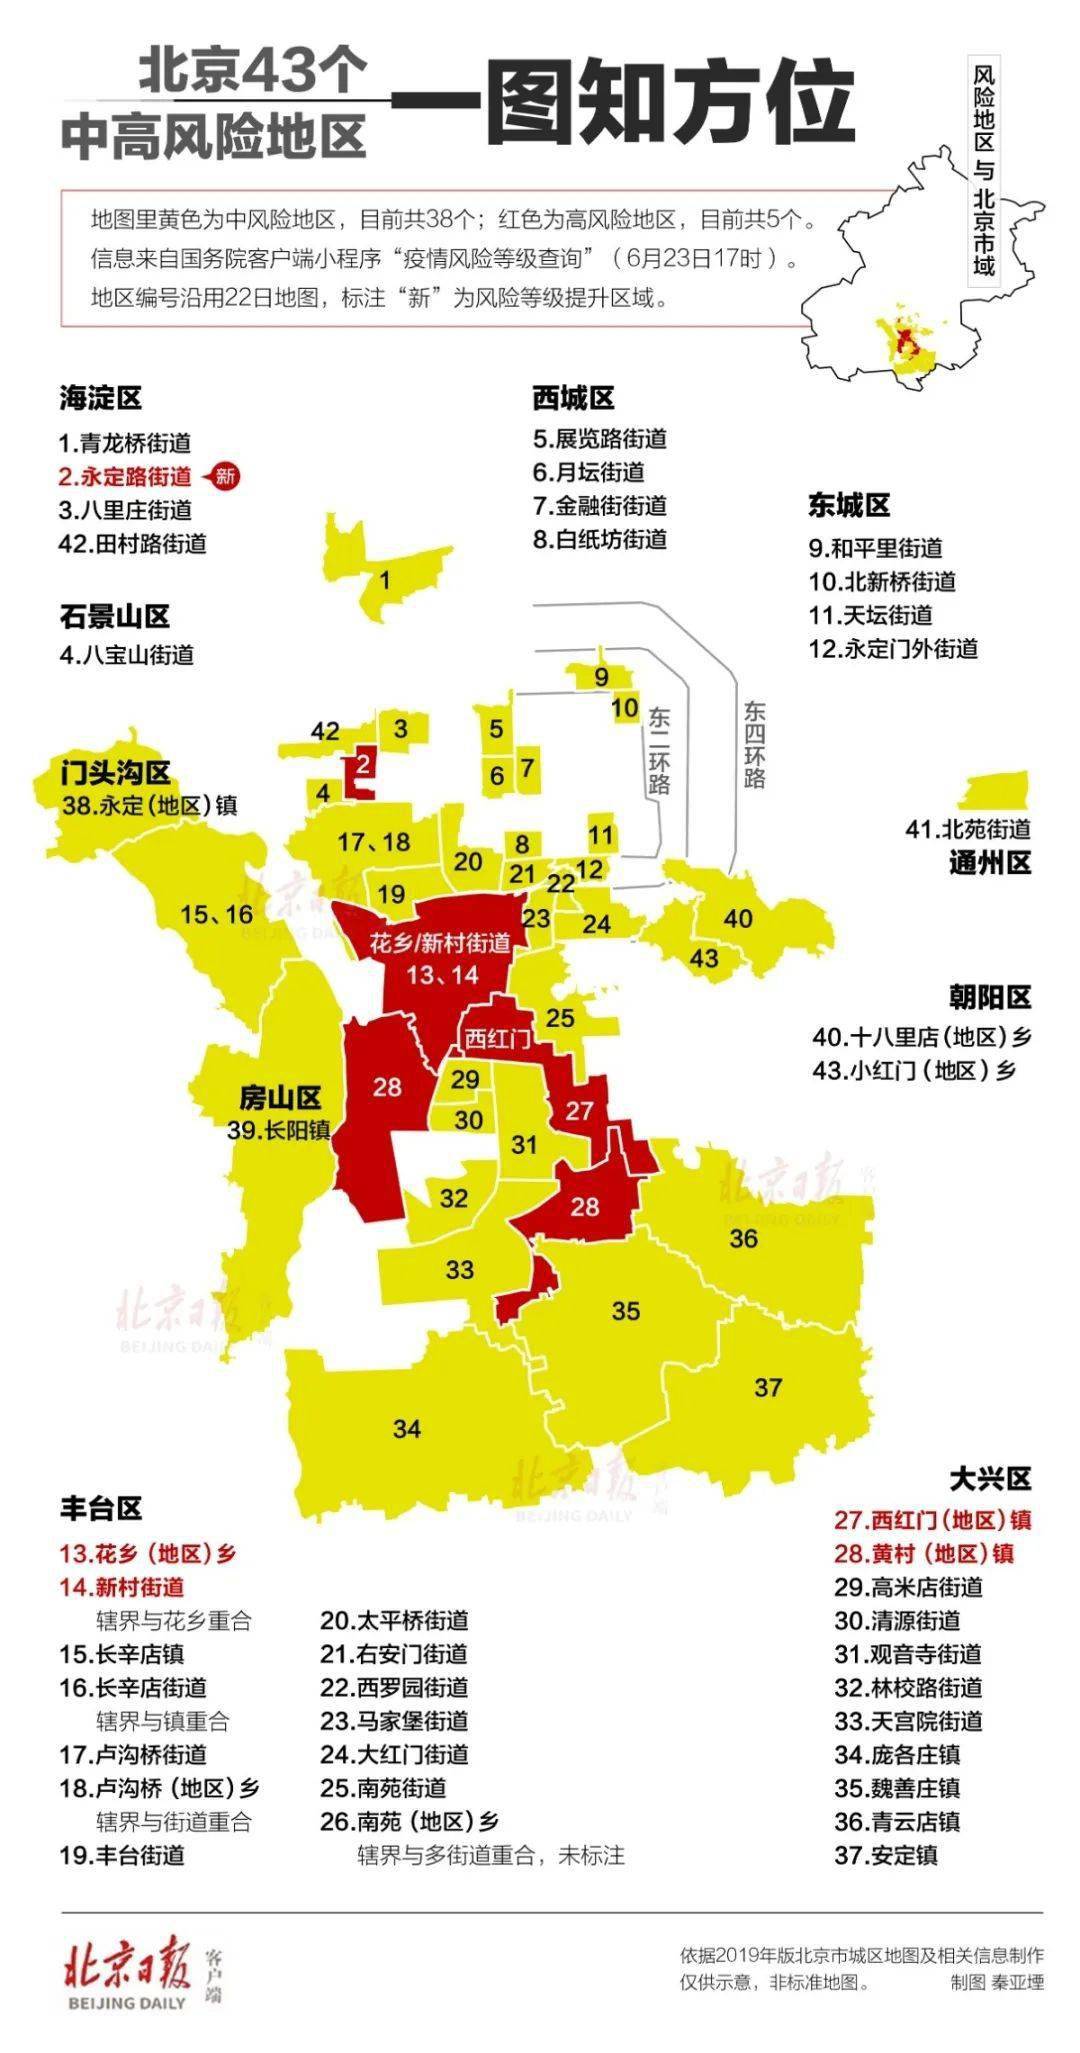 截至目前,北京已有38个中风险地区,涉及丰台区,大兴区,海淀区,西城区